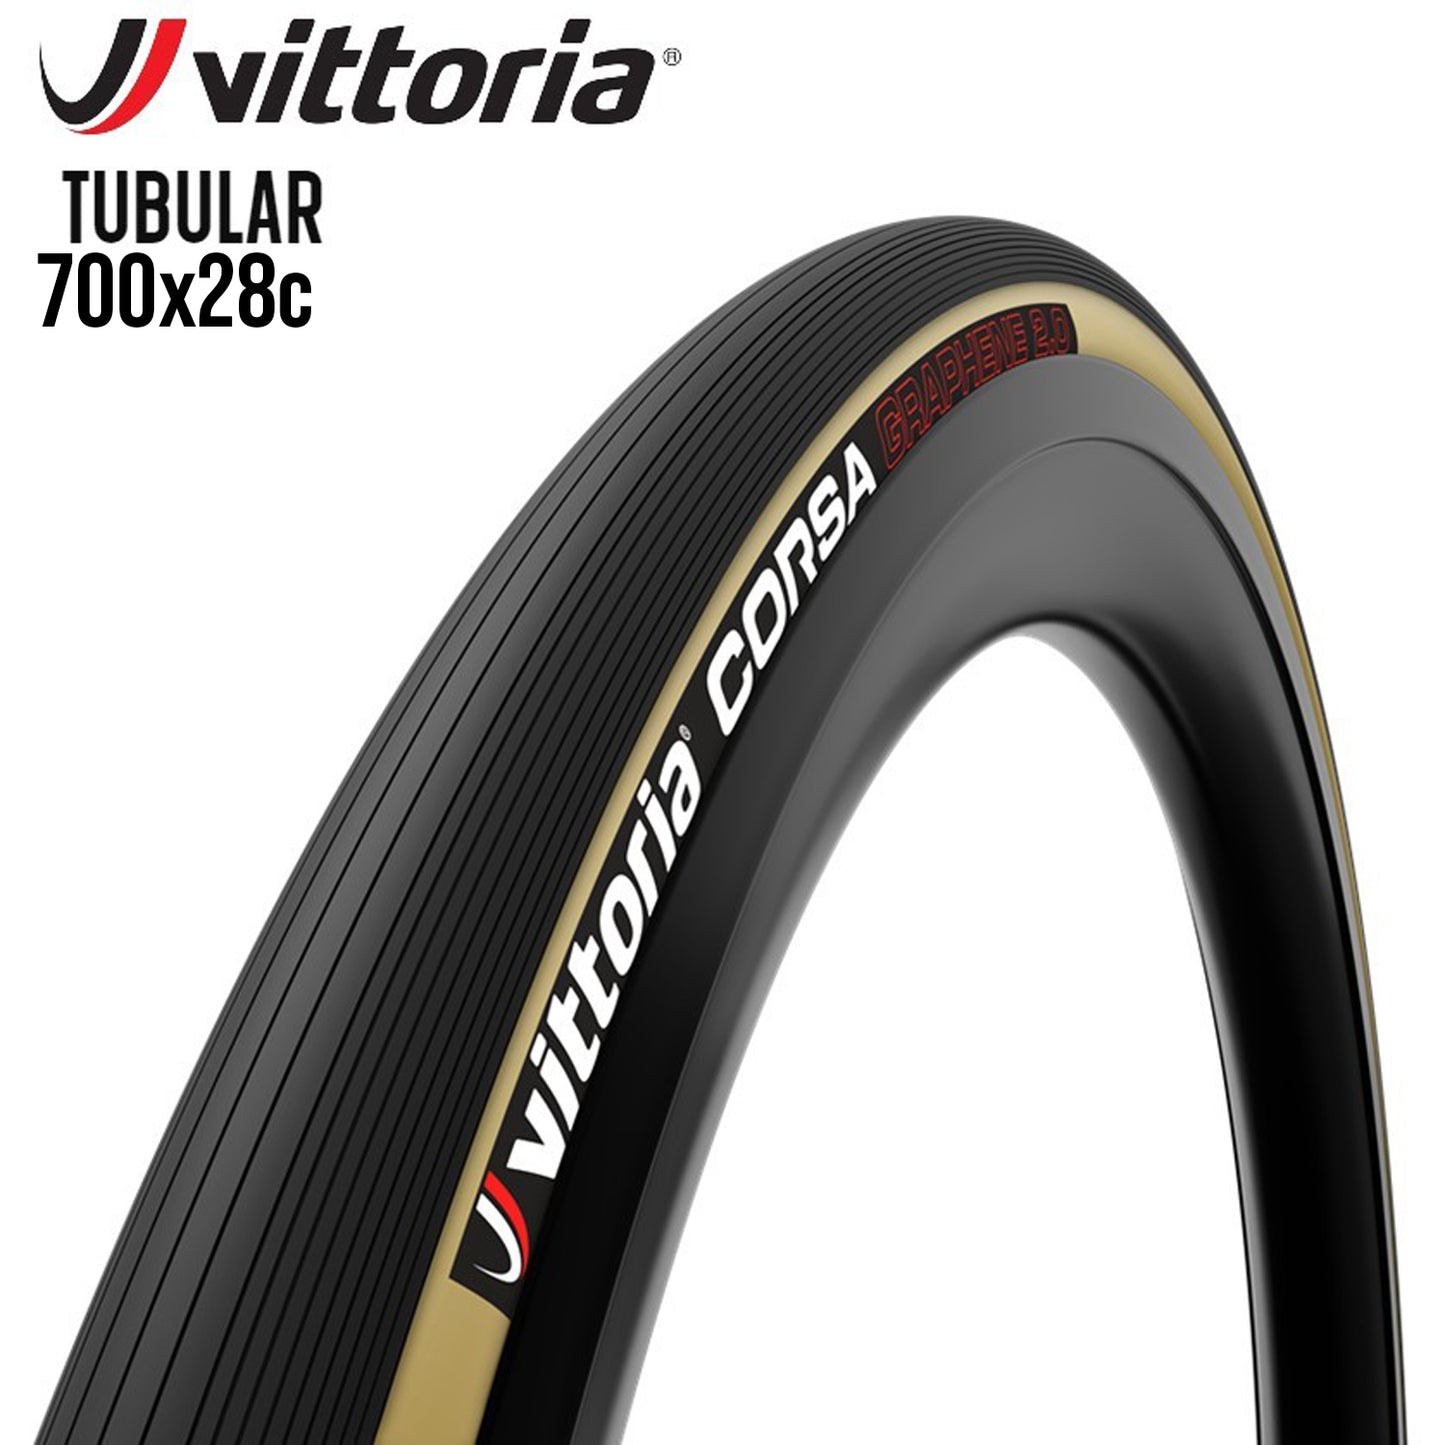 Vittoria Corsa Tubular Race Road Bike Tire Cotton & Graphene - Tan / Skin Wall